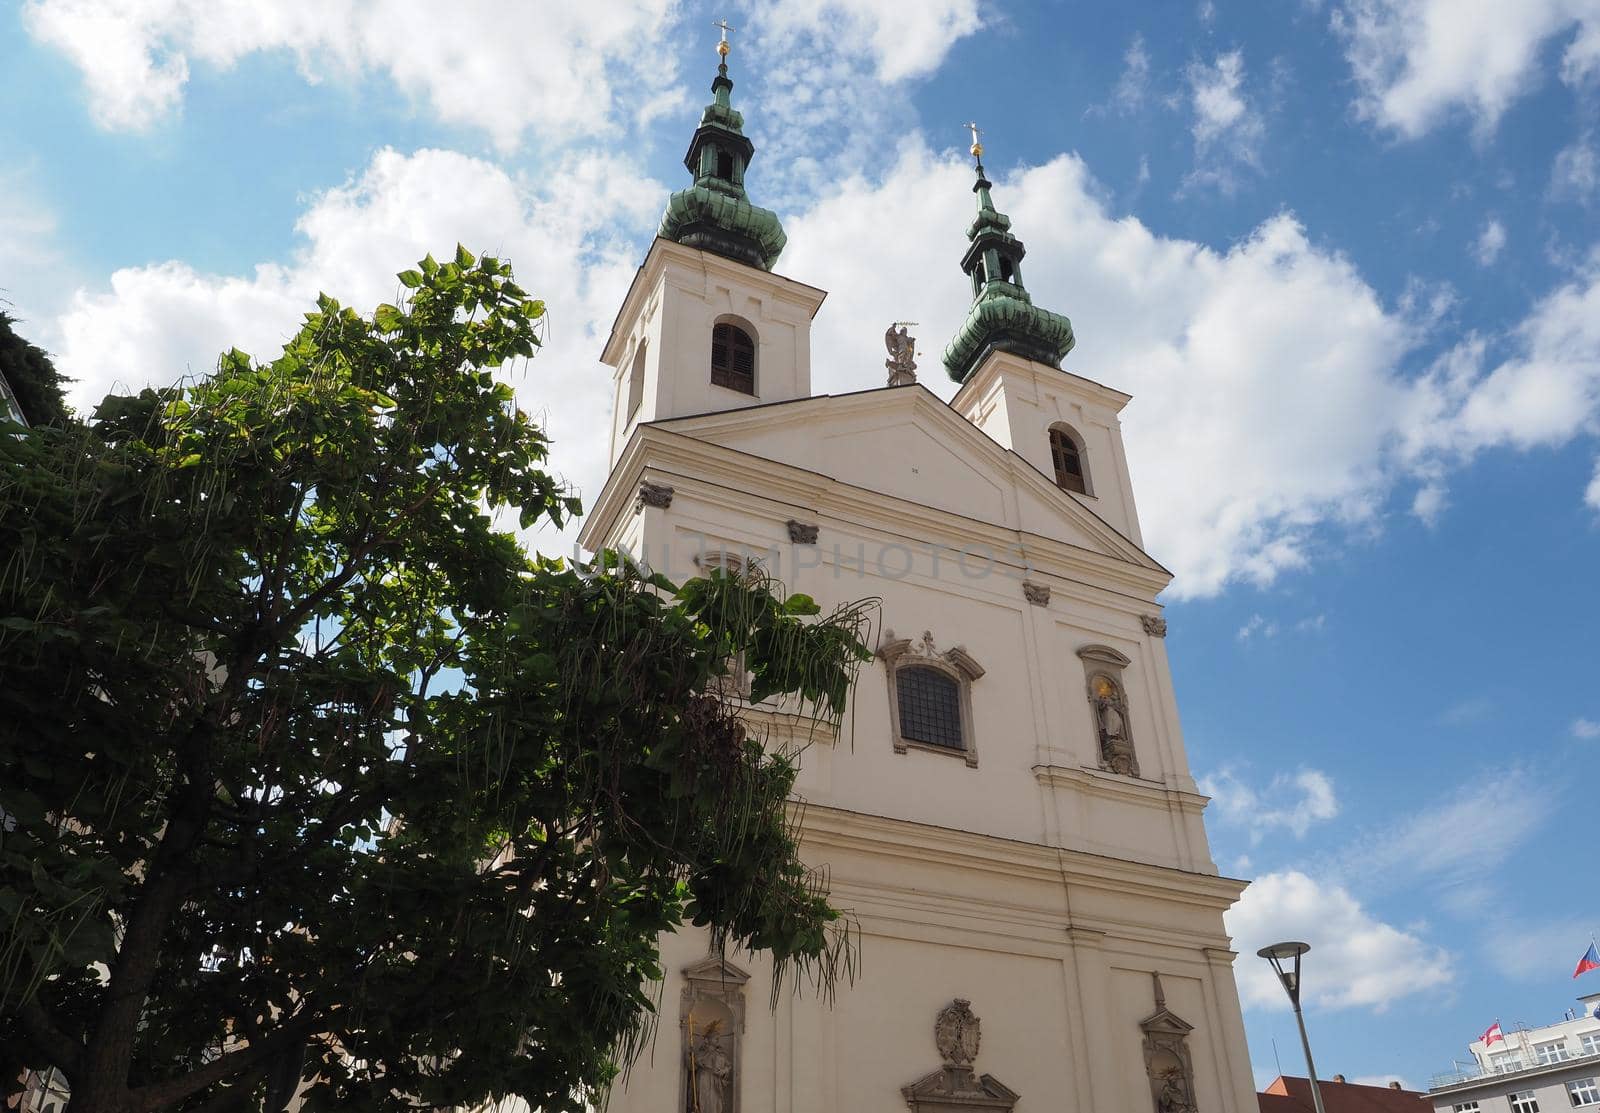 St Michael church in Brno by claudiodivizia